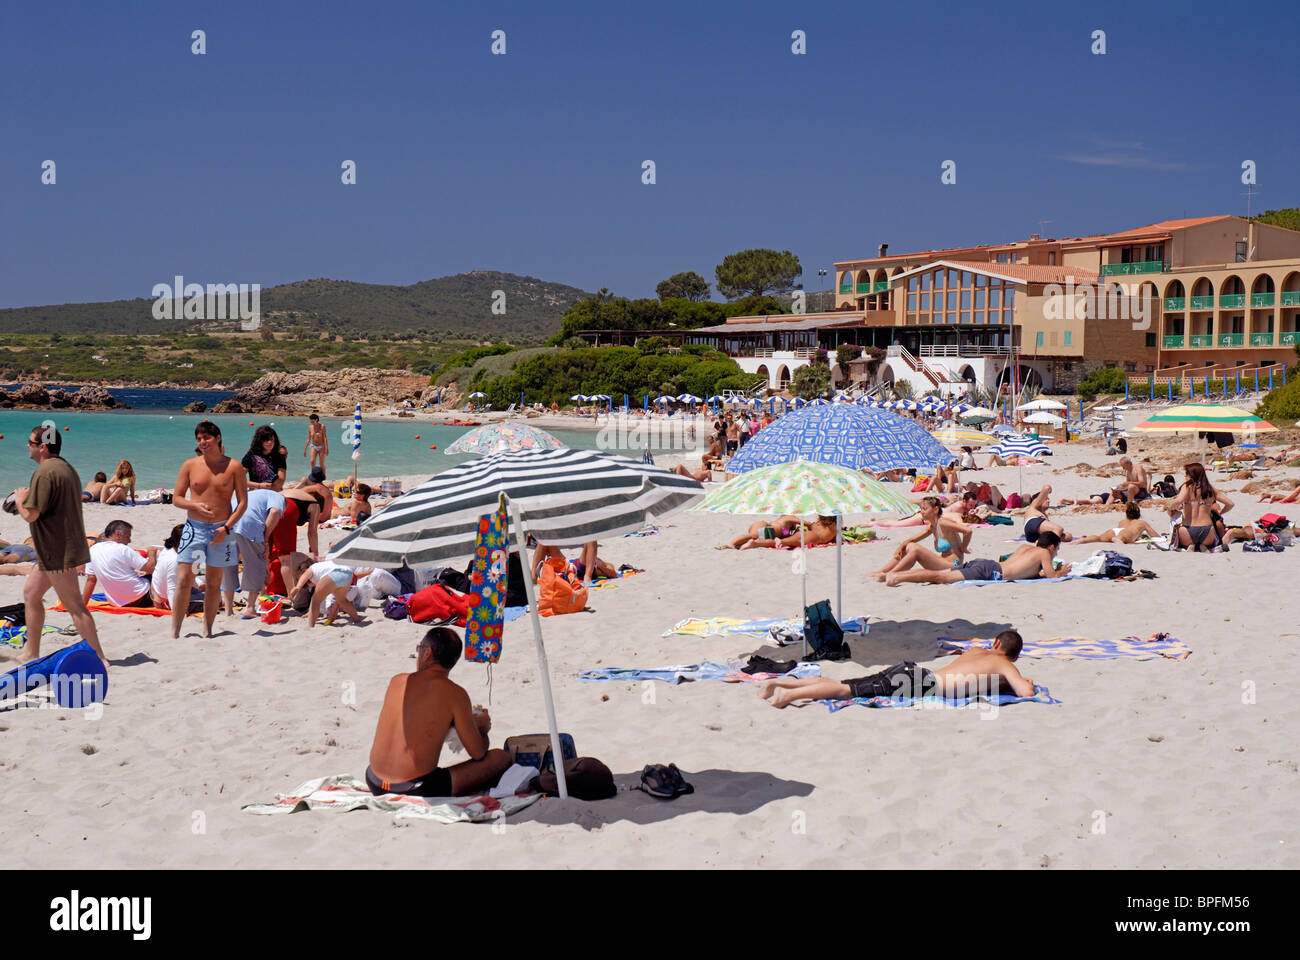 Spiaggia delle Bombarde, Sardinia, Italy Stock Photo